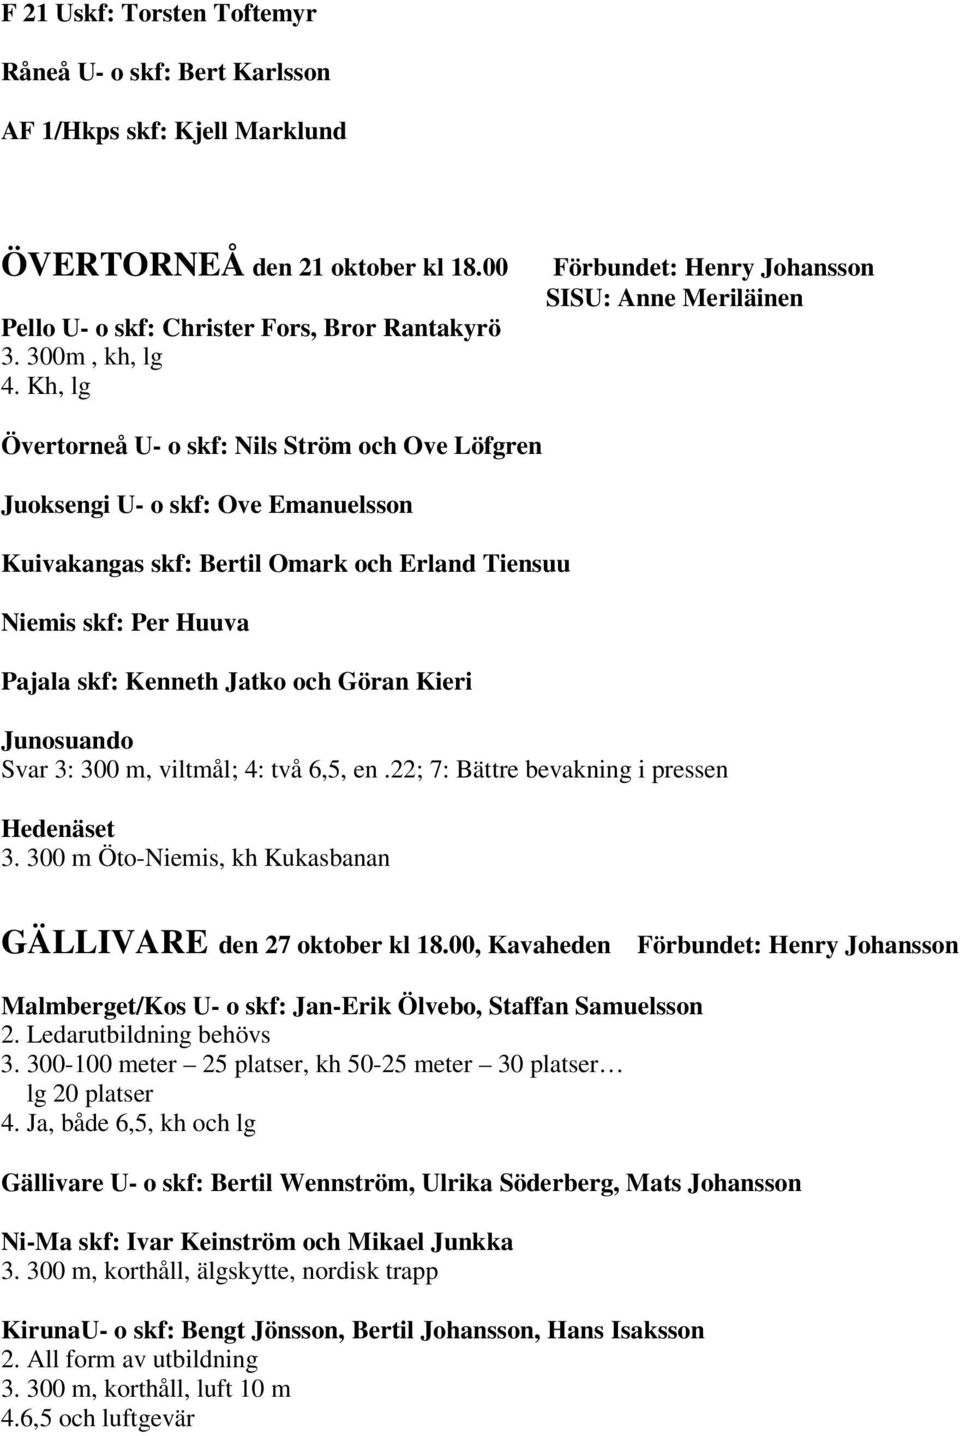 och Göran Kieri Junosuando Svar 3: 300 m, viltmål; 4: två 6,5, en.22; 7: Bättre bevakning i pressen Hedenäset 3. 300 m Öto-Niemis, kh Kukasbanan GÄLLIVARE den 27 oktober kl 18.